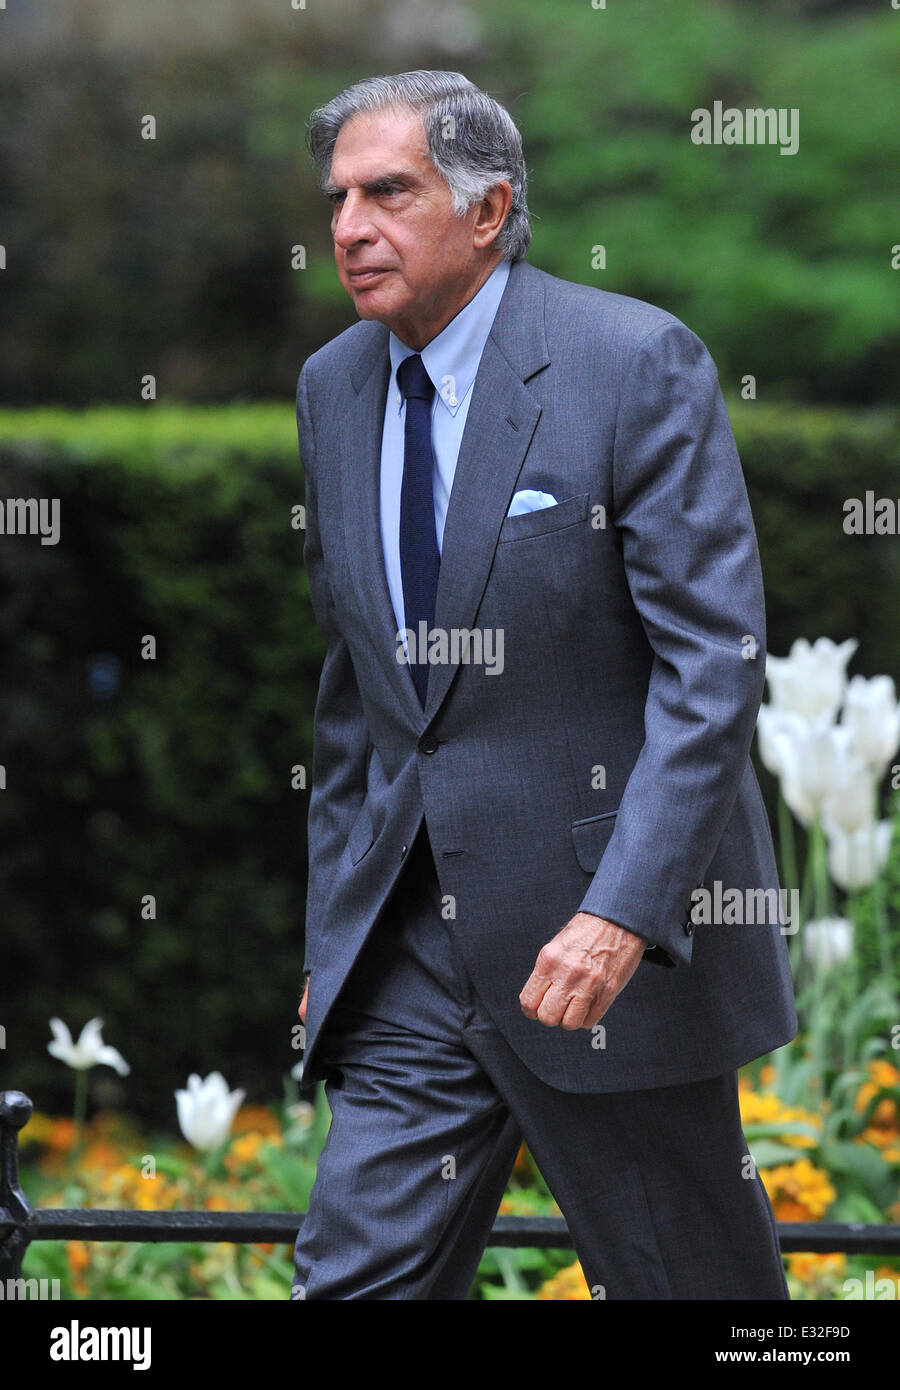 Les dirigeants d'arriver au 10 Downing Street pour Business Advisory Group rencontre avec le premier ministre David Cameron. Londres, Angleterre - 20.05.13 comprend : Ratan Tata,Tata Group Où : London, Royaume-Uni Quand : 20 mai 2013om Banque D'Images